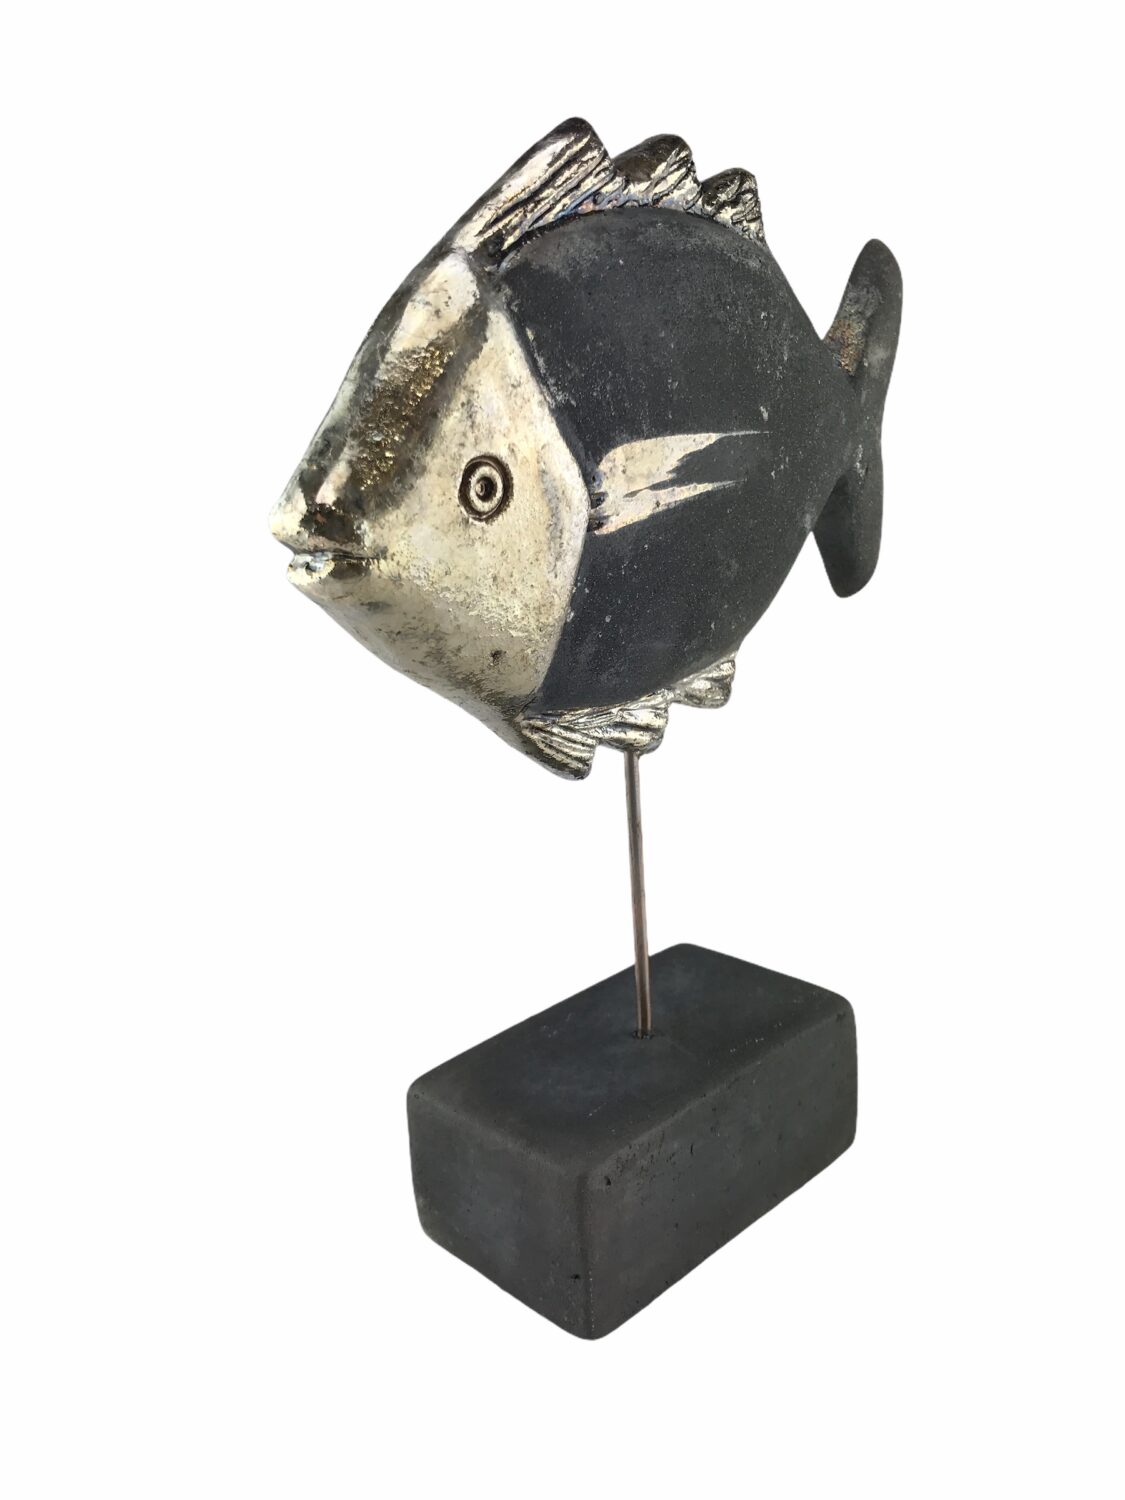 Raku Ceramic fish on a base of 21 cm.